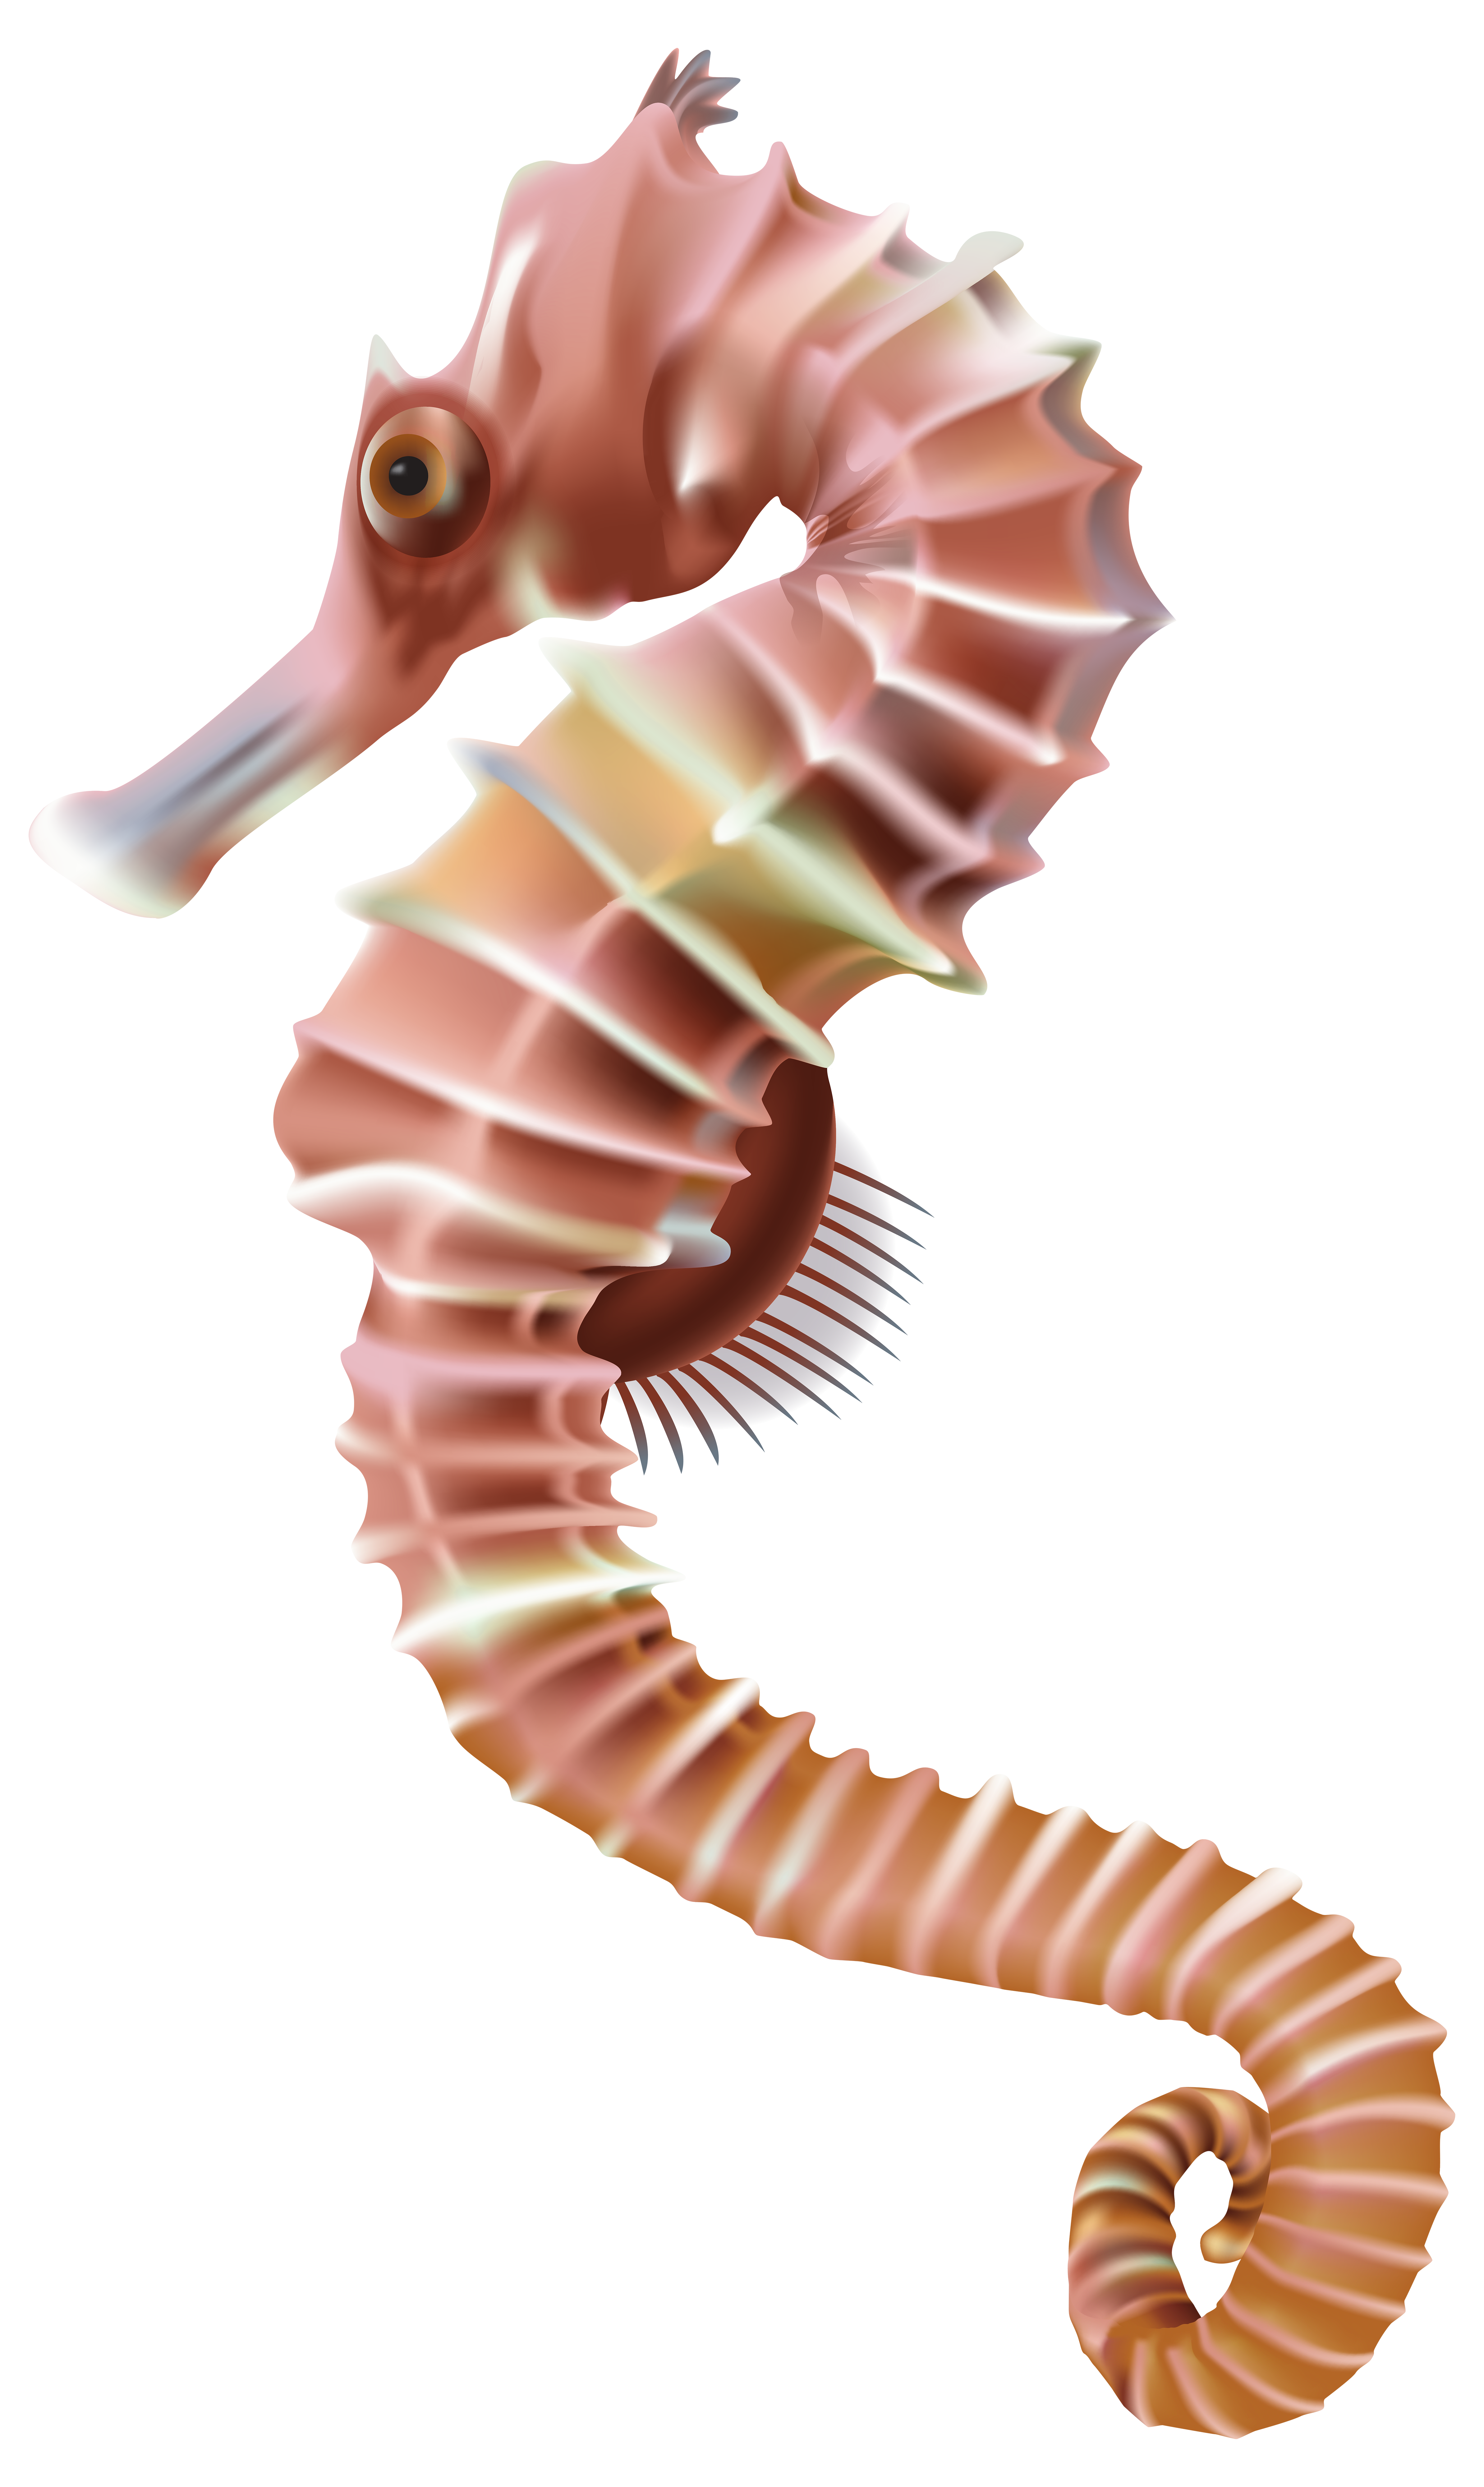 Worm clipart art. Seahorse png transparent clip